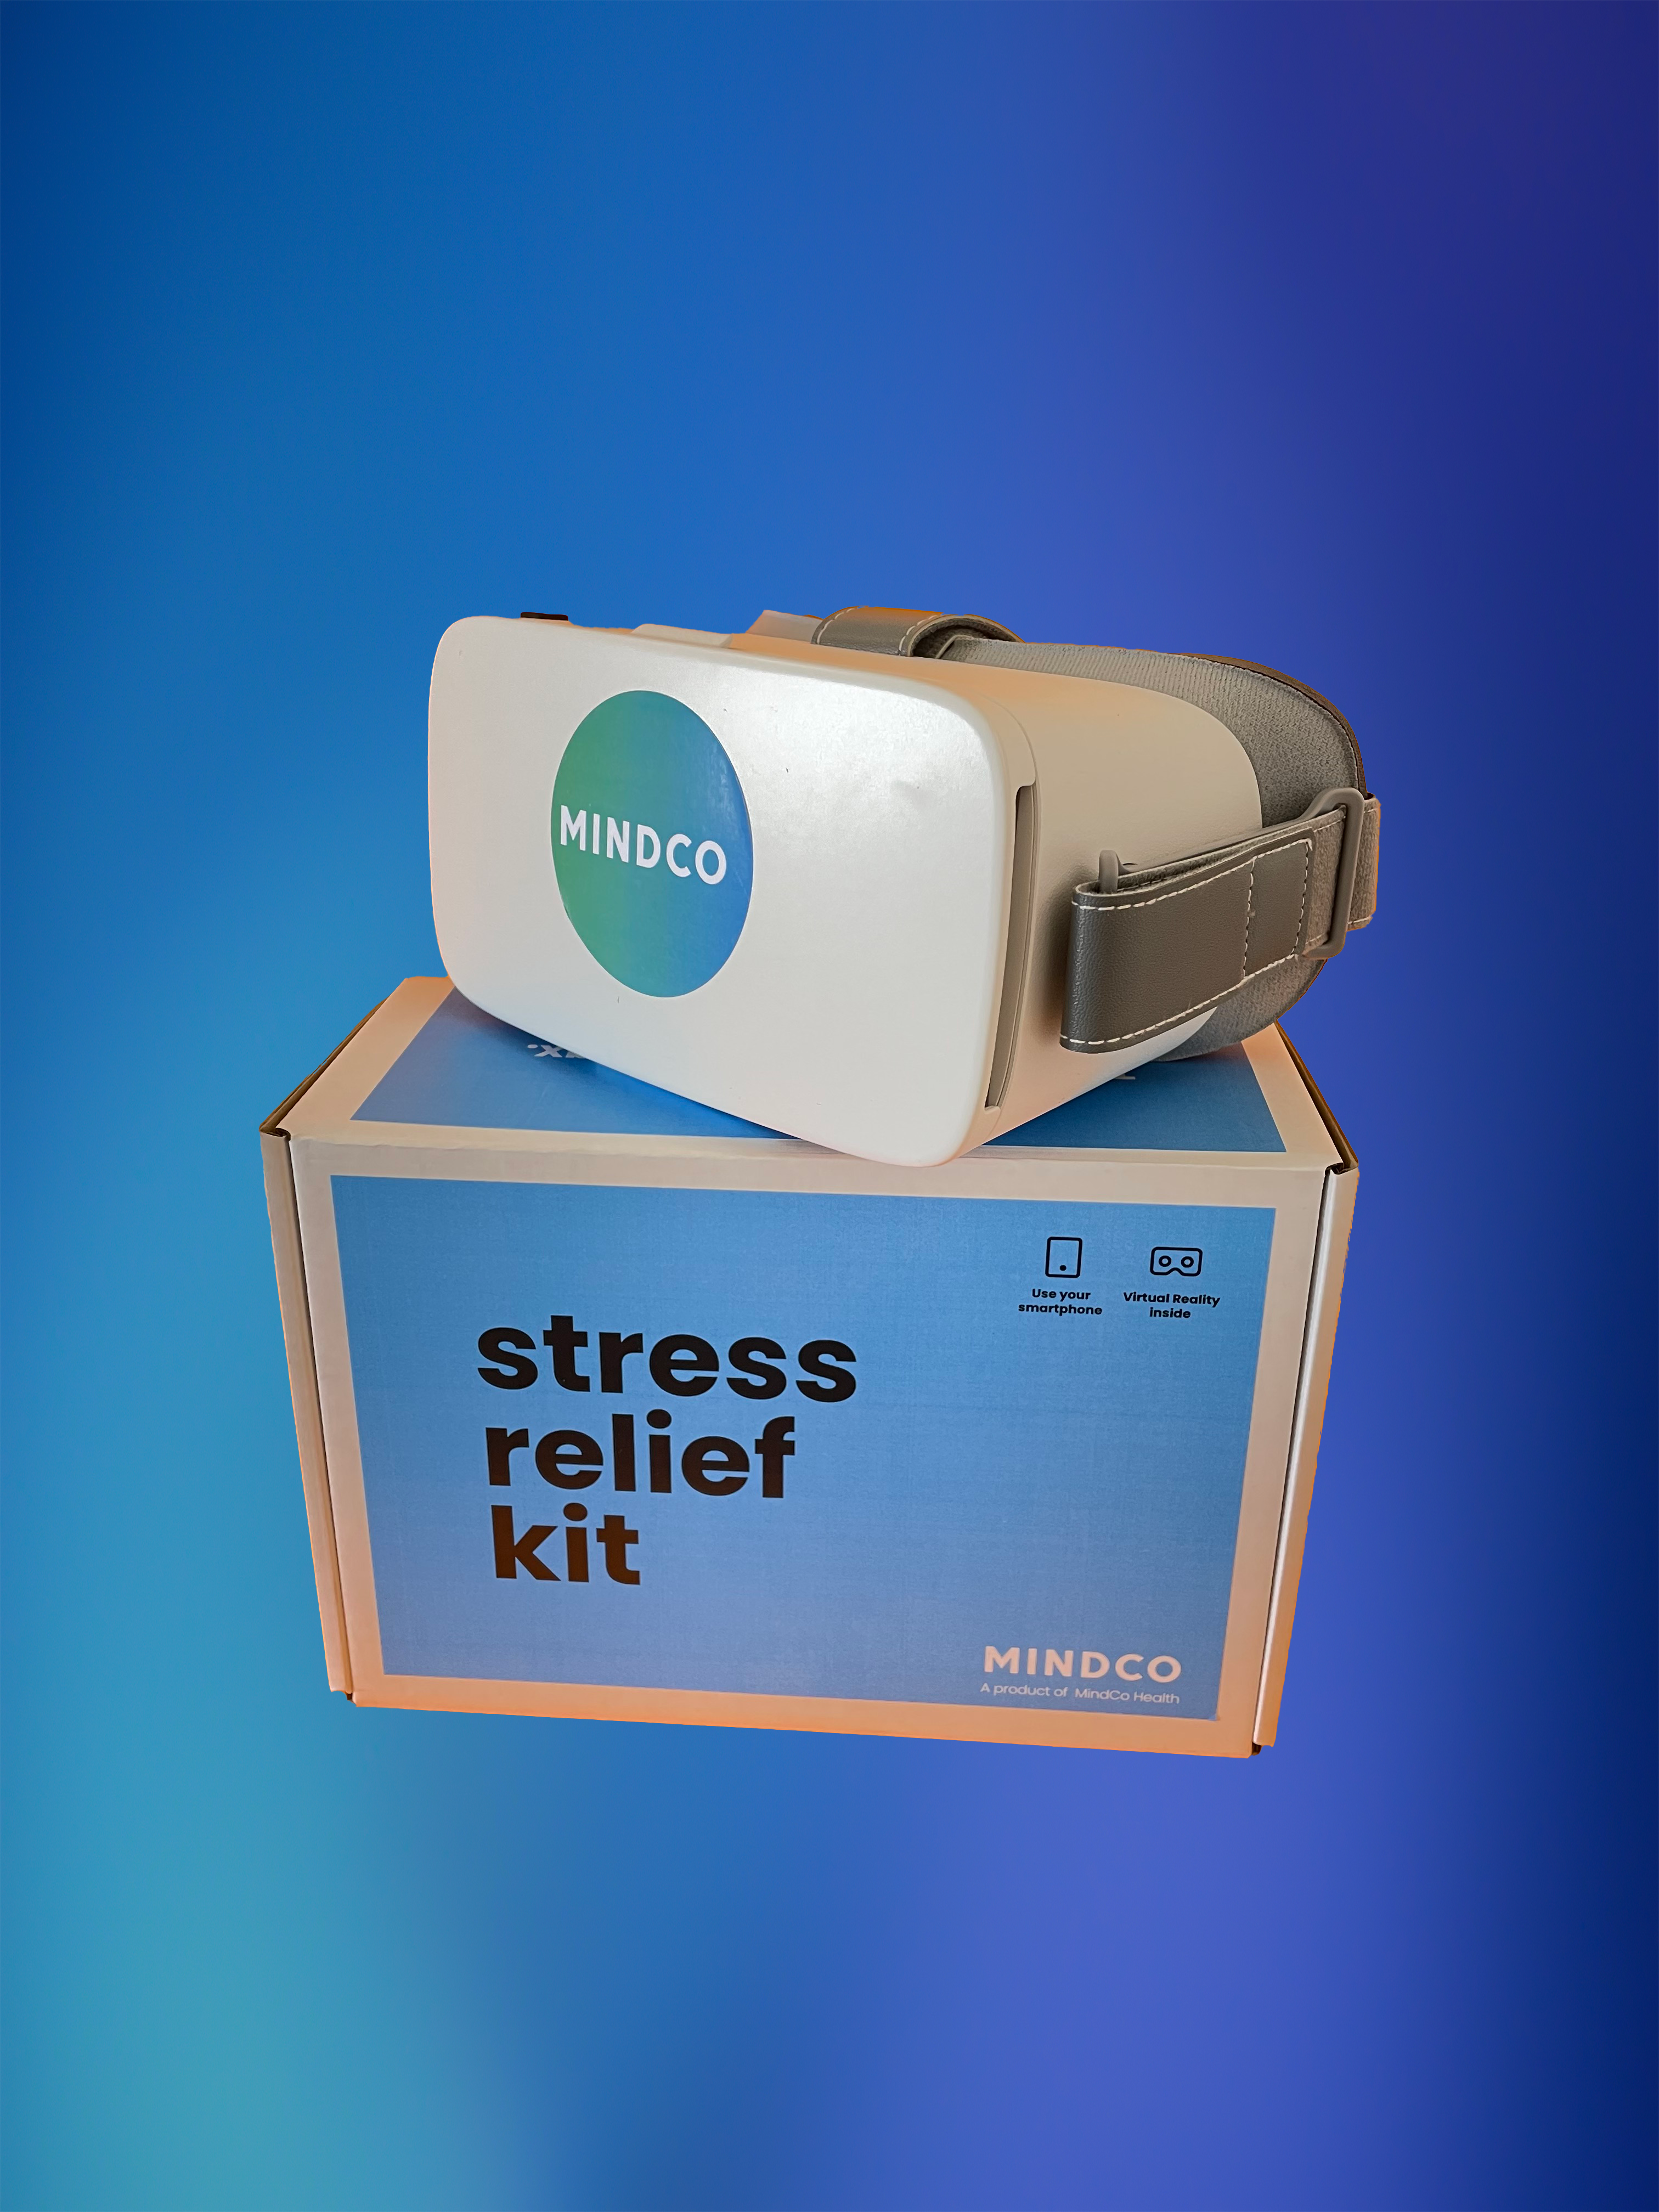 MindCo Health - vendor materials